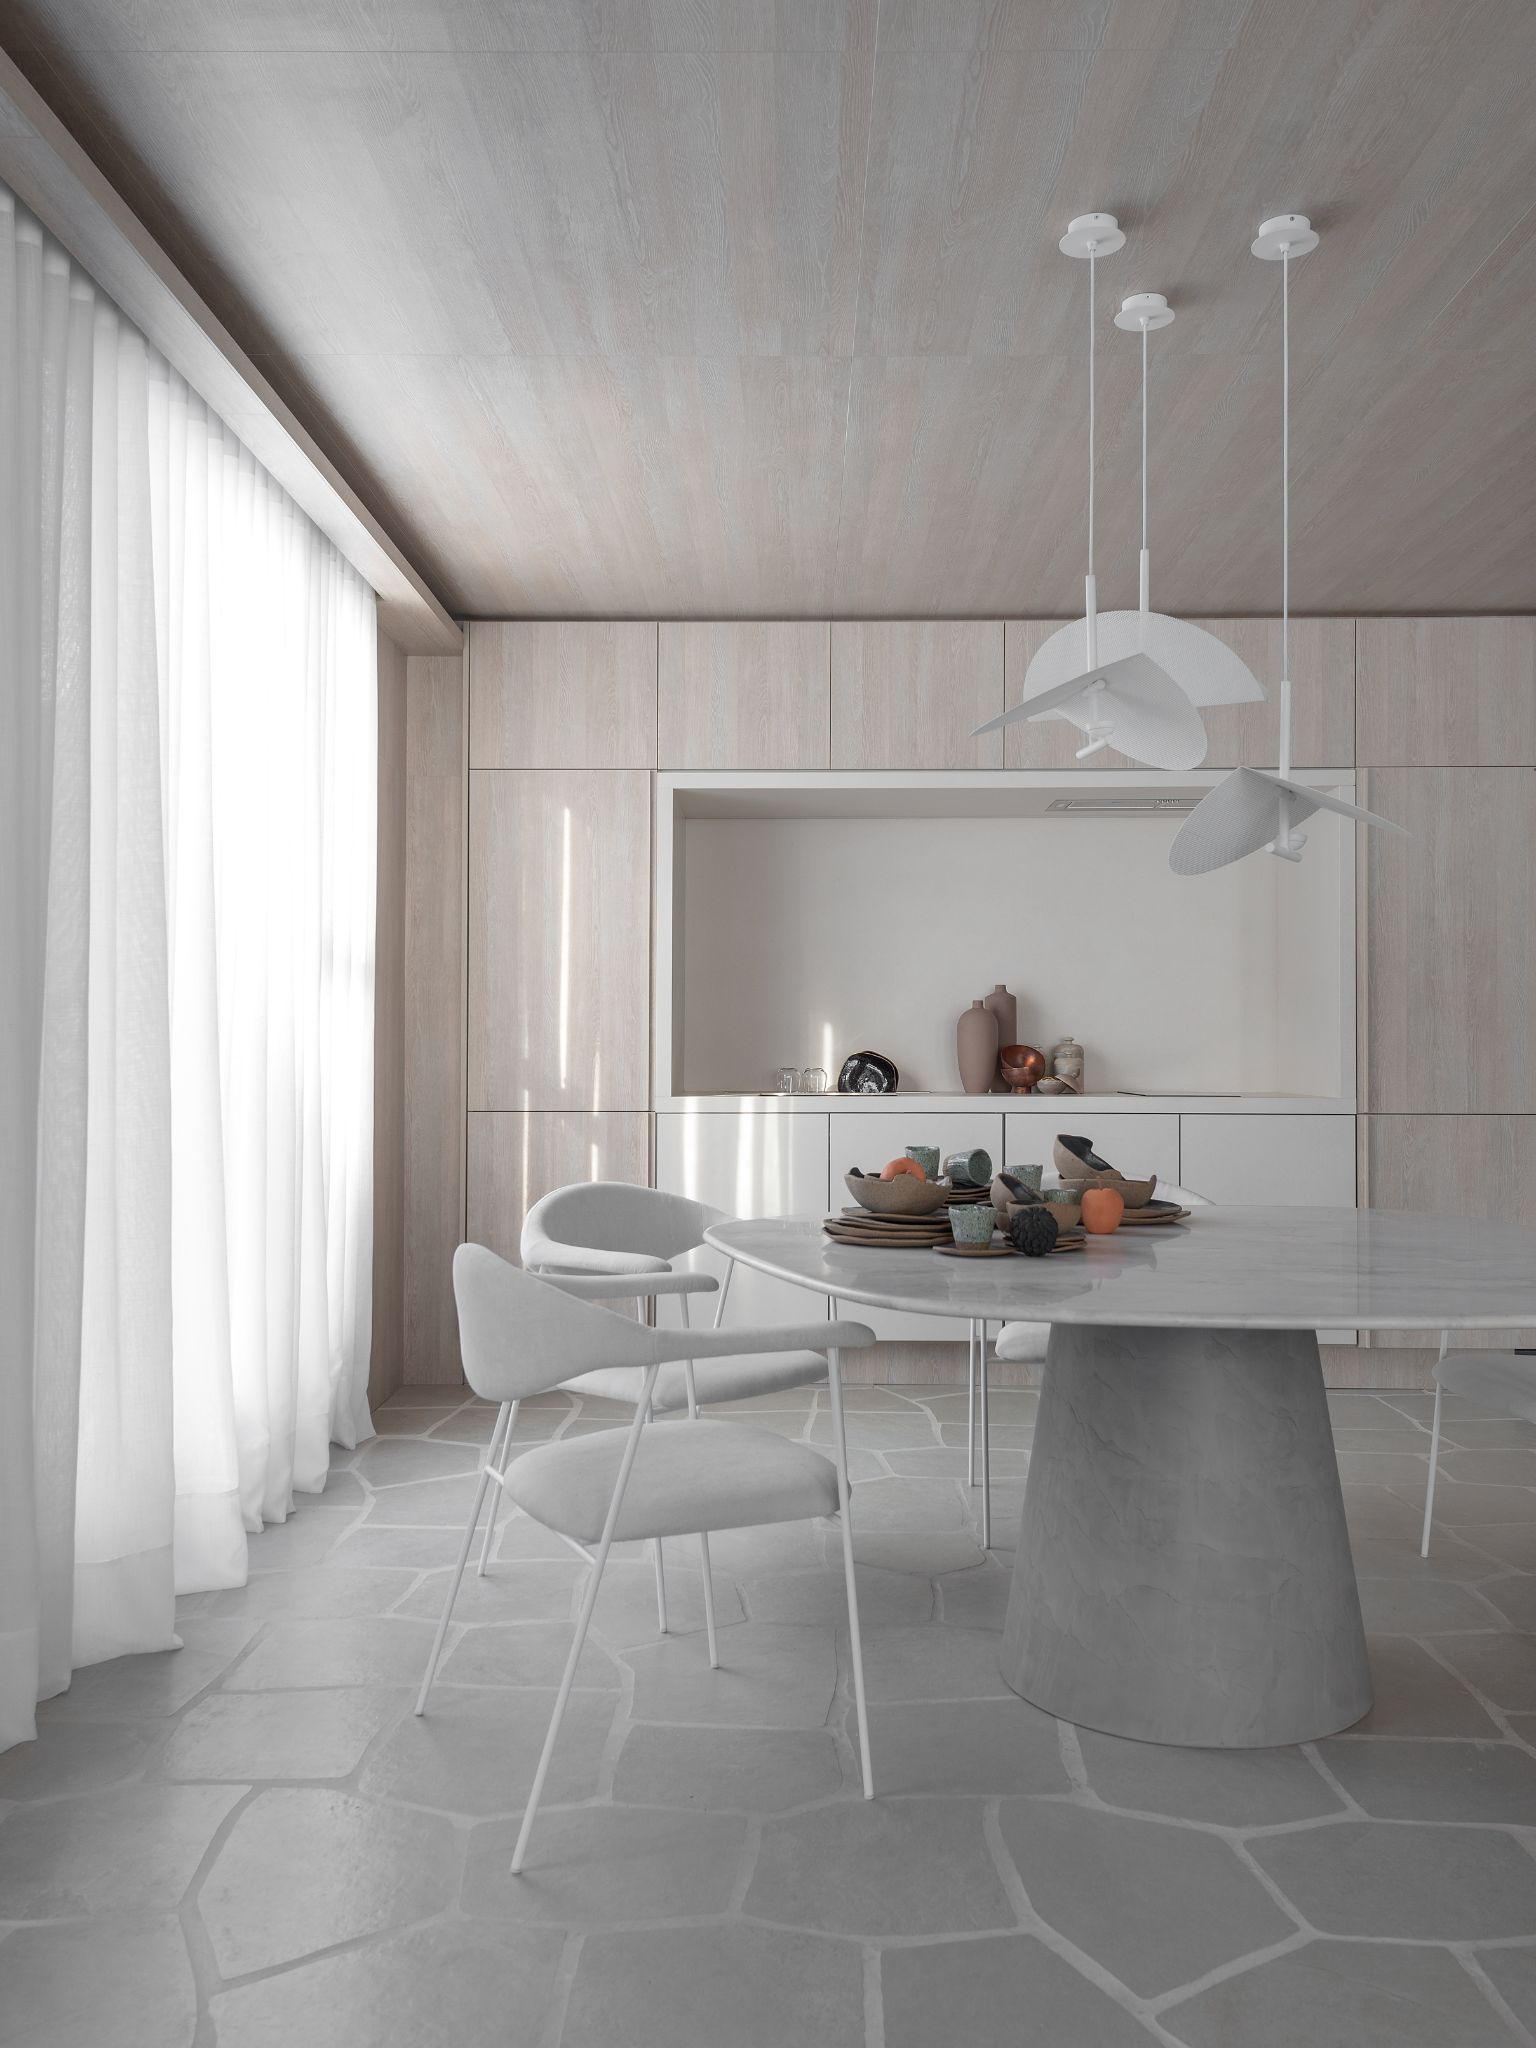 Cozinha moderna com piso geométrica cinza, mesa redonda com cadeiras cinzas, luminárias pendentes sob a mesa branca, armários em tom nude e teto revestido com madeira nude